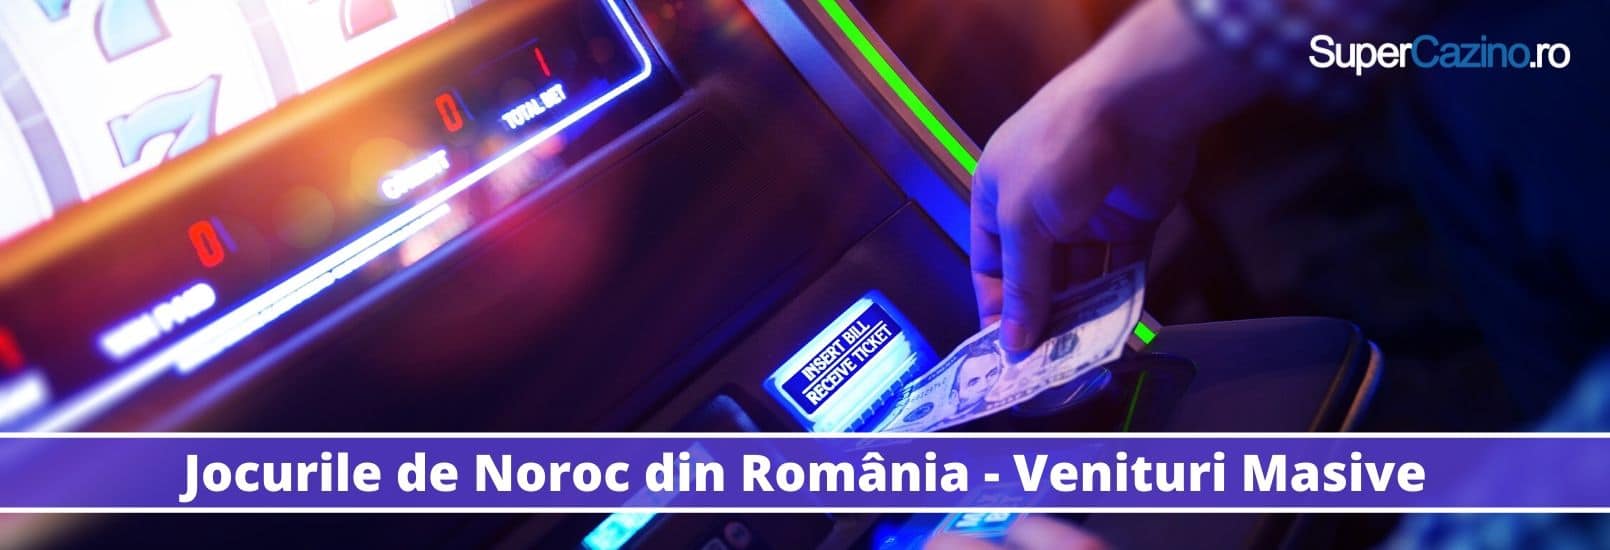 industria de jocuri de noroc romania